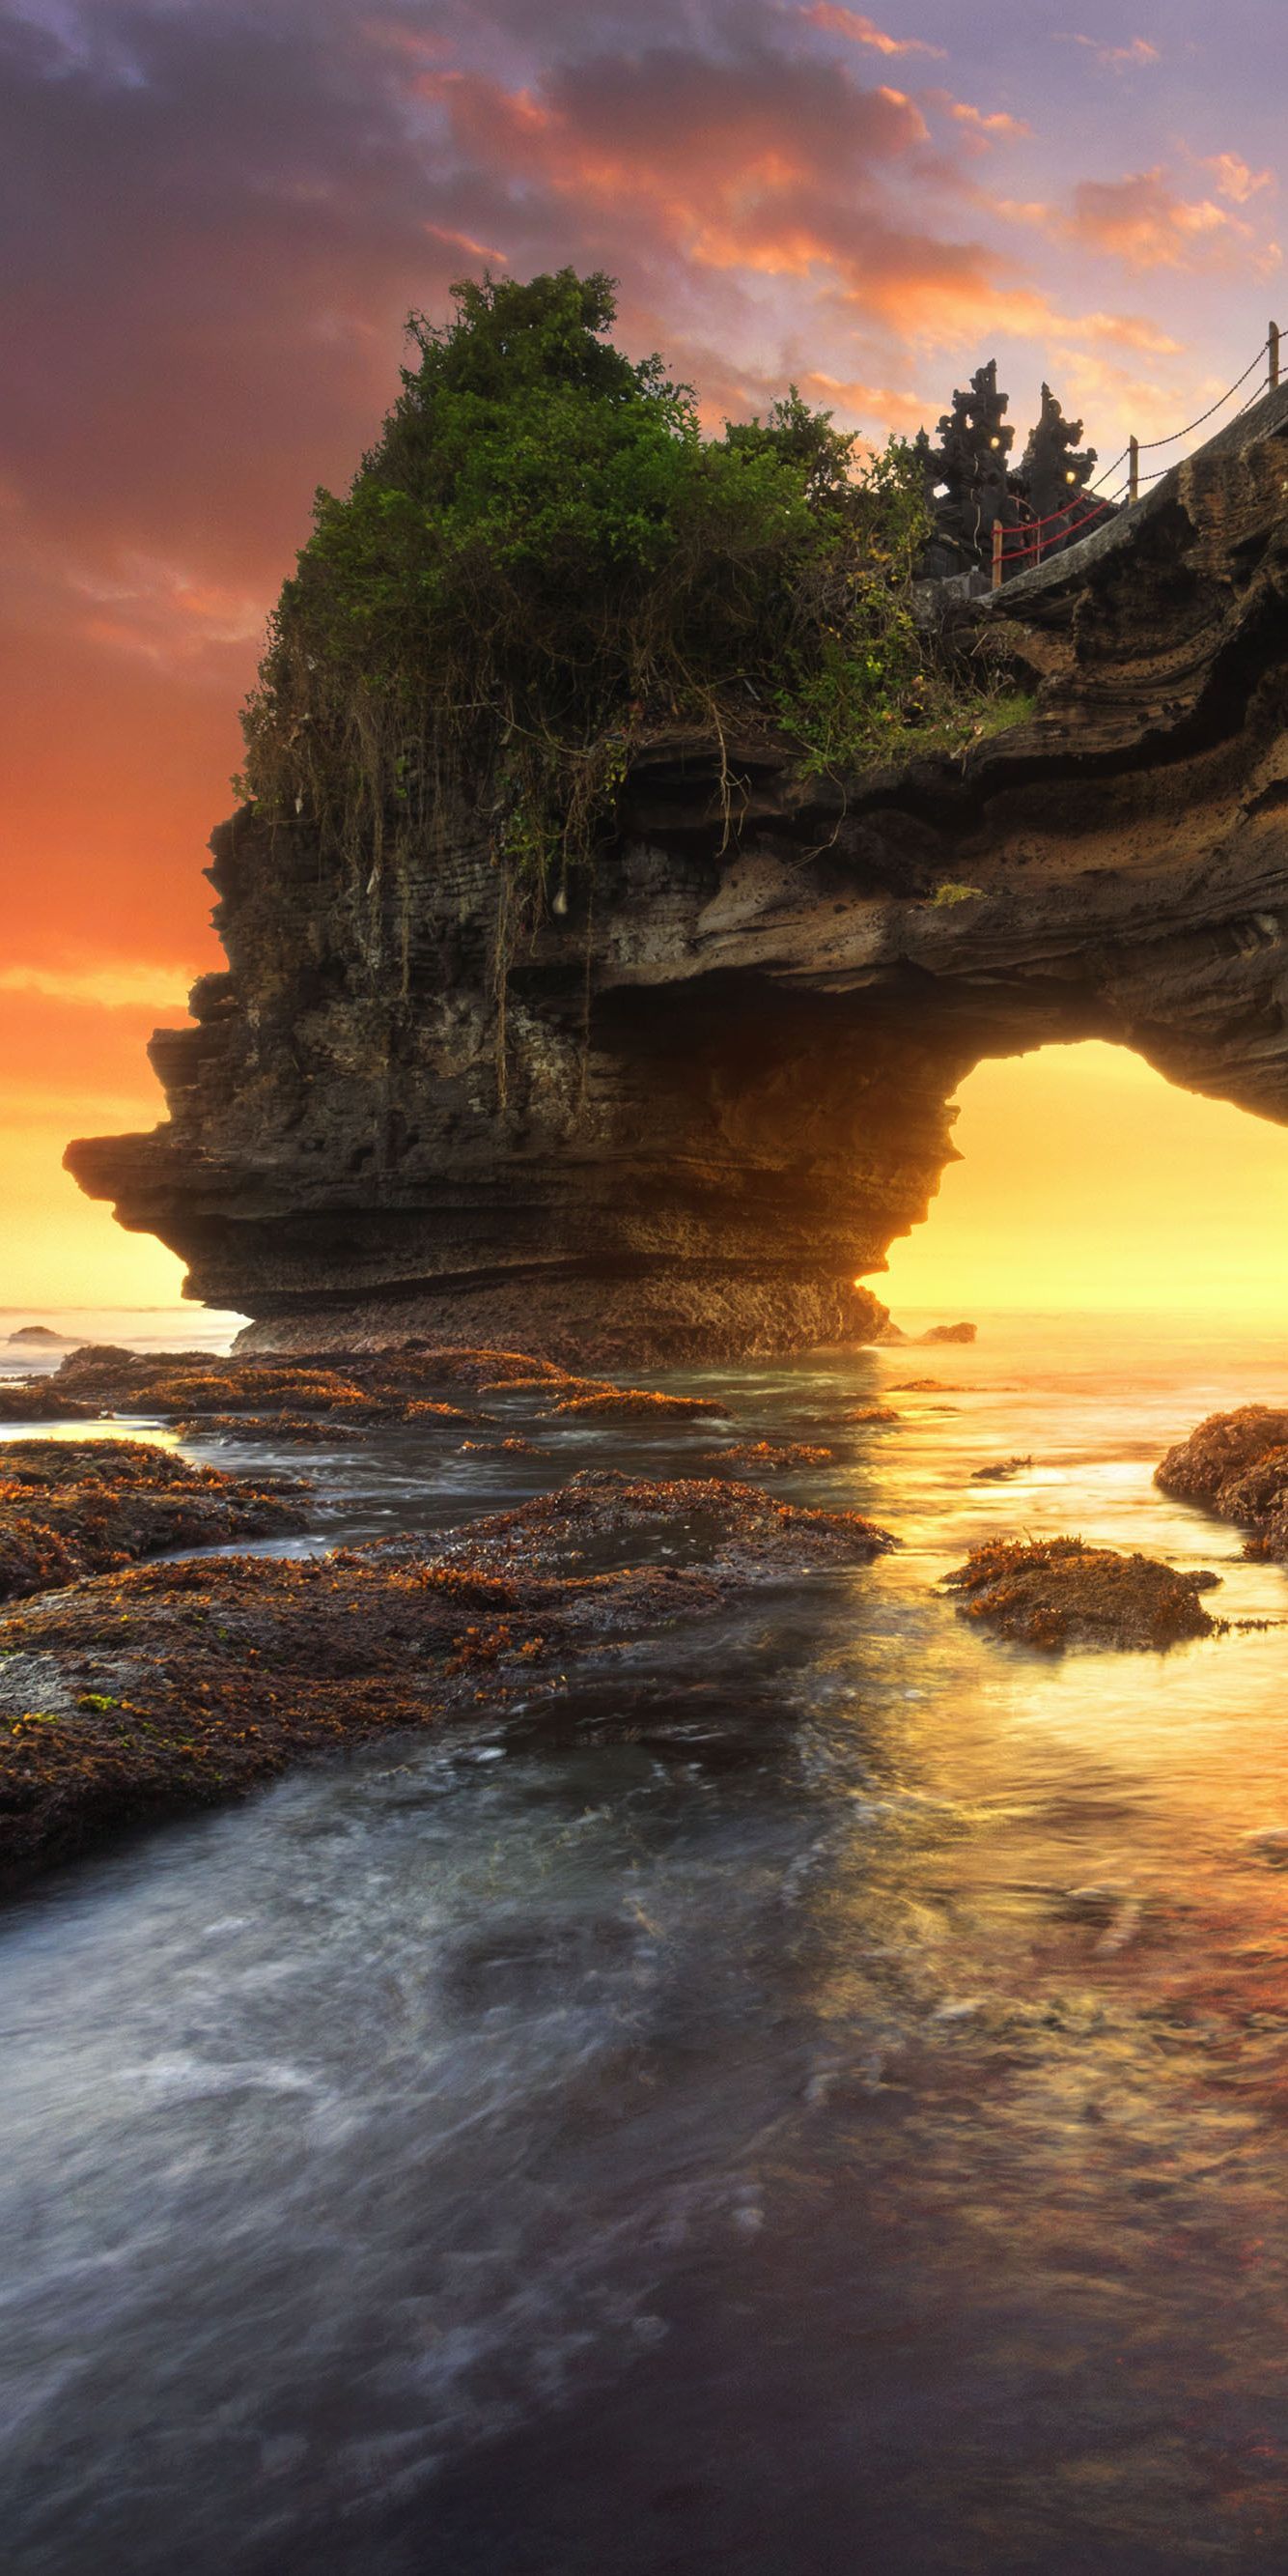 Batu Bolong & Tanah Lot, Bali, Indonesia